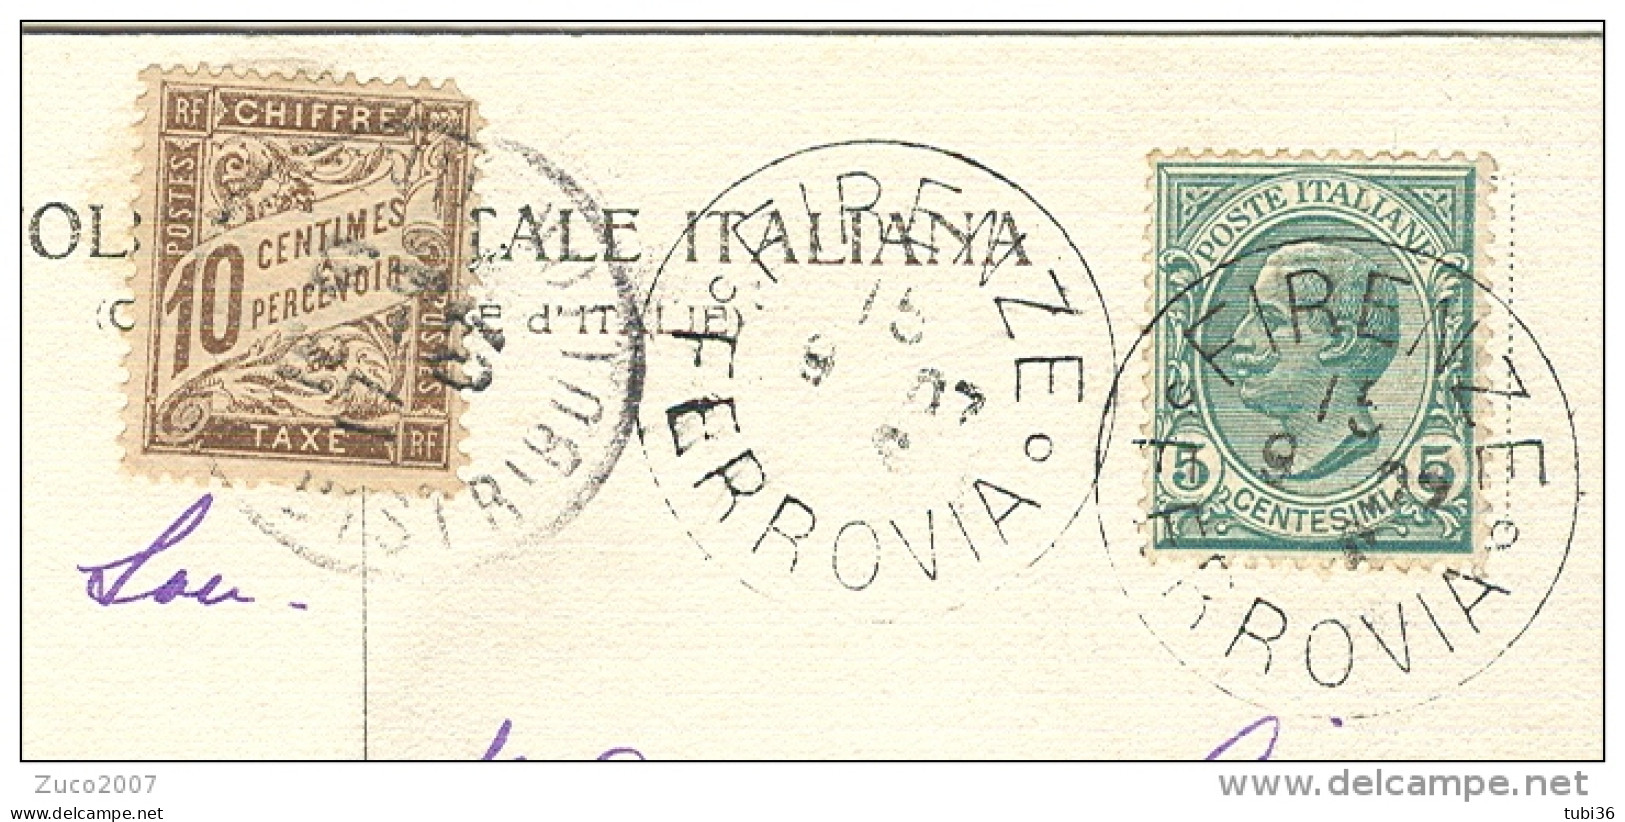 LEONI Cent.5 SU CARTOLINA B/N VIAGGIATA  1907, FIRENZE-PARIGI, TASSATA FRANCIA Cent.10,FIRENZE BATTISTERO - Strafport